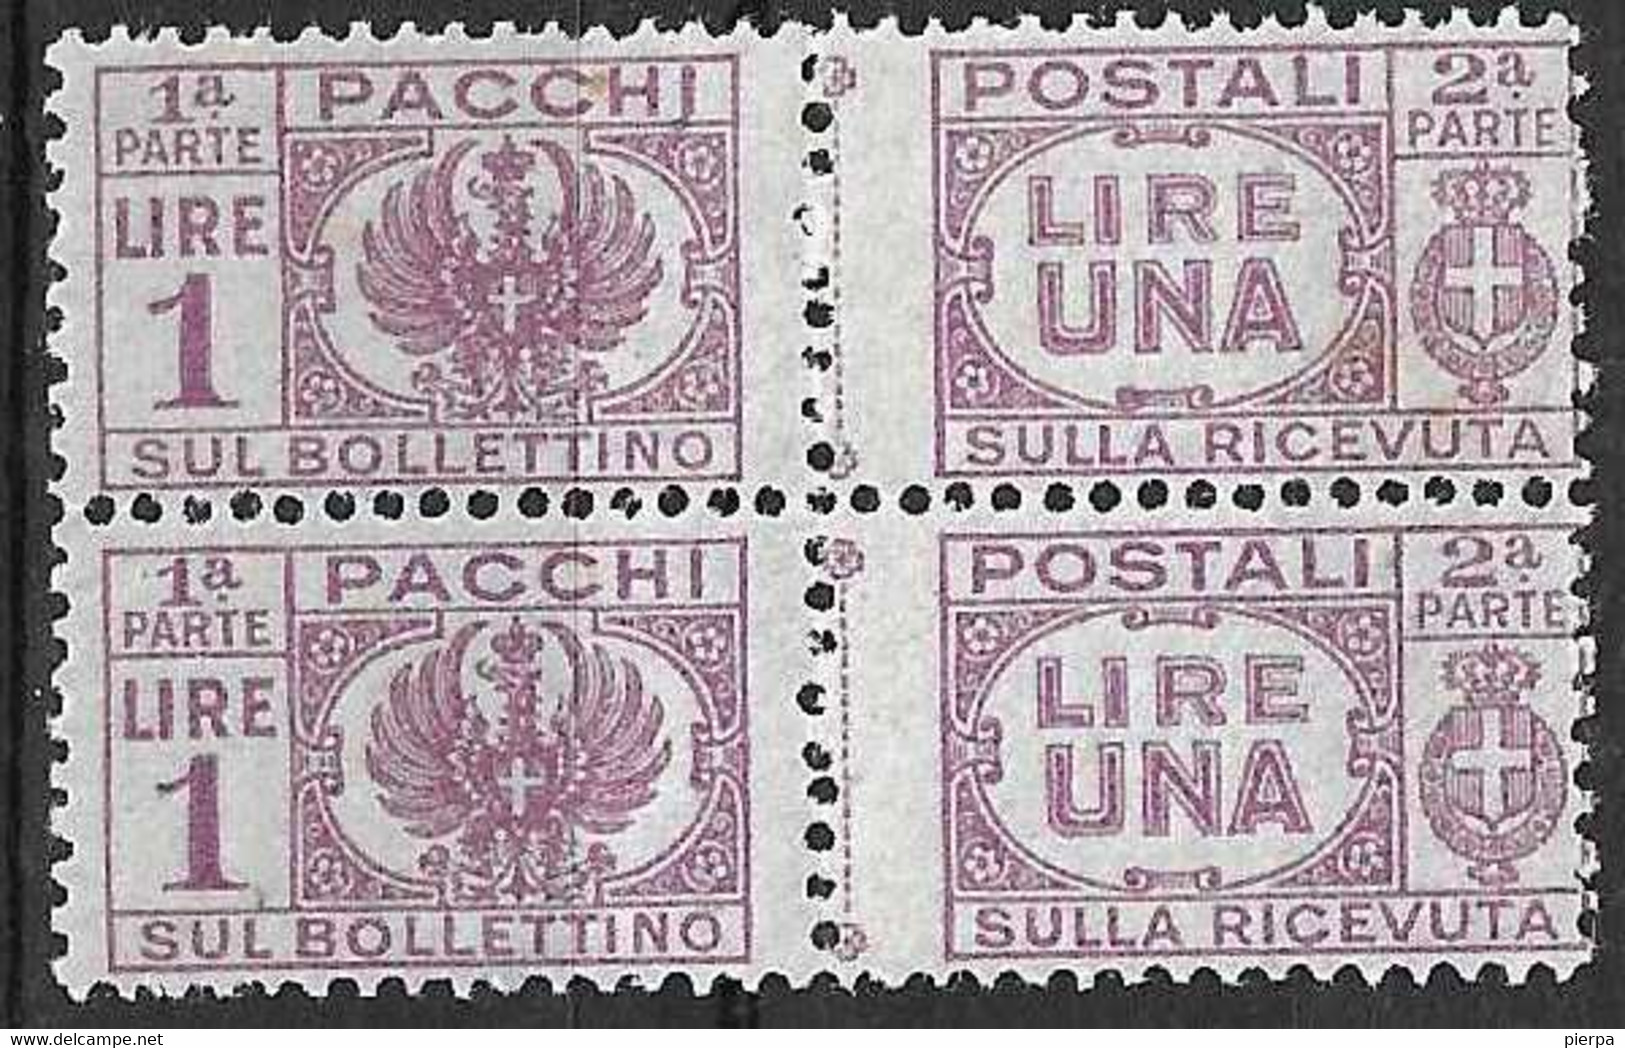 ITALIA - 1946 - PACCHI POSTALI -COPPIA DEL LIRE 1 - FIL CORONA - NUOVO MNH**(SS 60 - YVERT 46 - MICHEL 60) - Colis-postaux